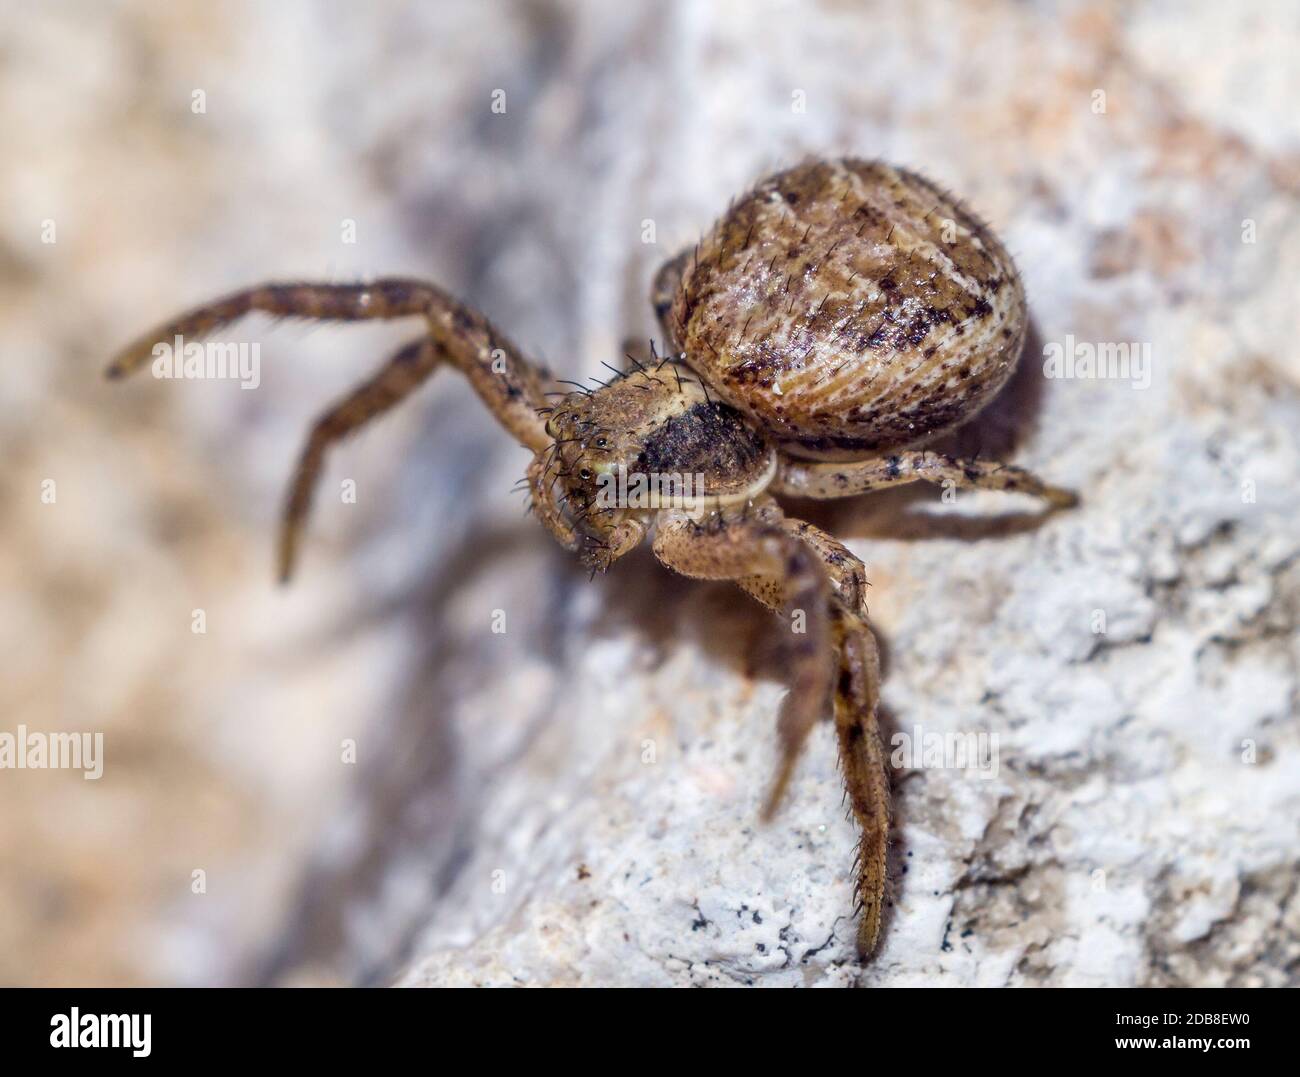 Xysticus cristatus (Familia Thomisidae). Araña parda marrón sobre piedra. Macrofotografía. Madrid Stock Photo